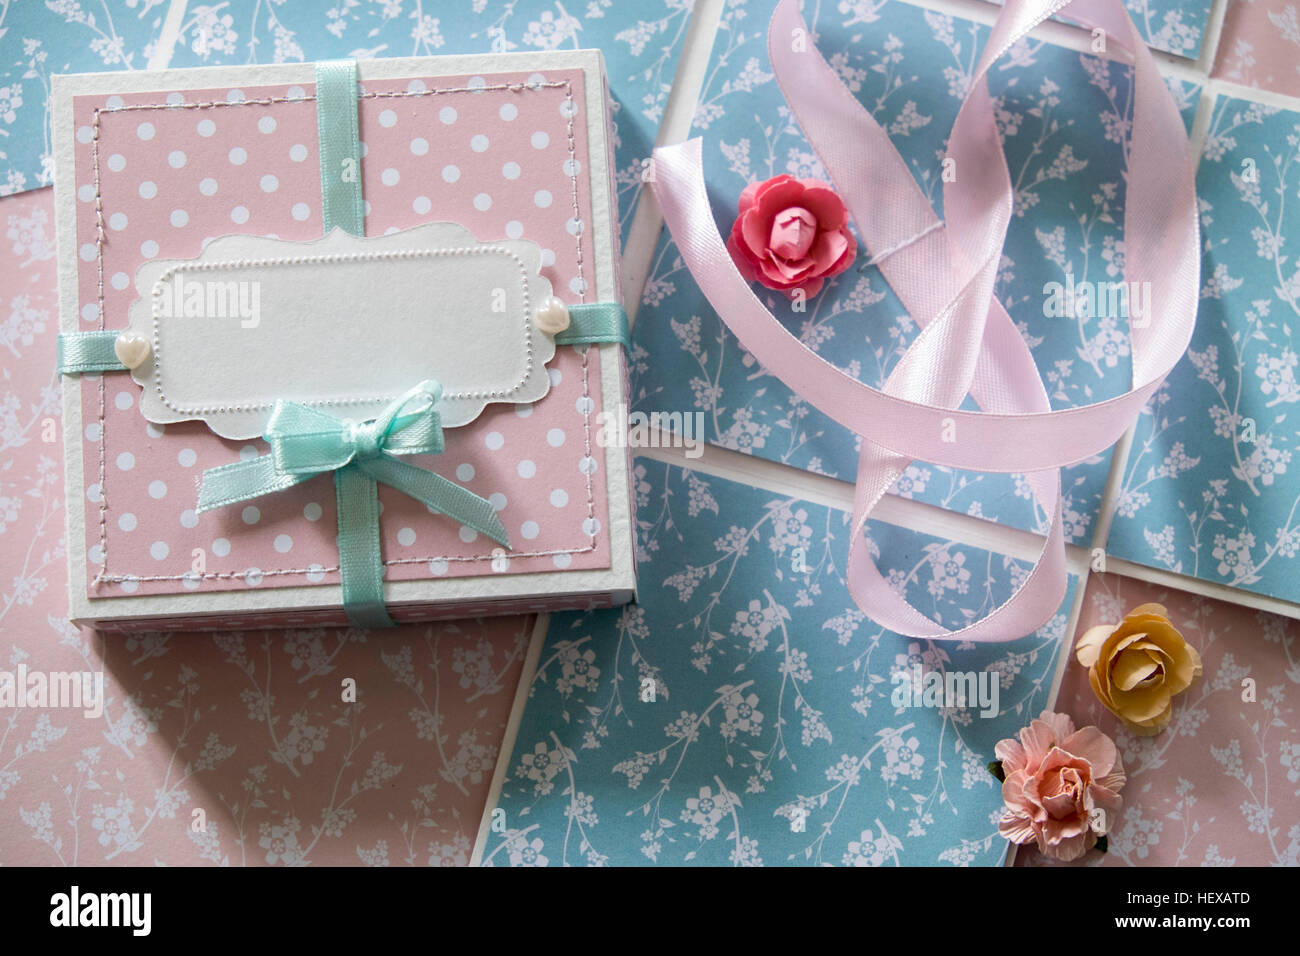 Vue de dessus de boîte-cadeau, ruban et fleurs en papier Banque D'Images